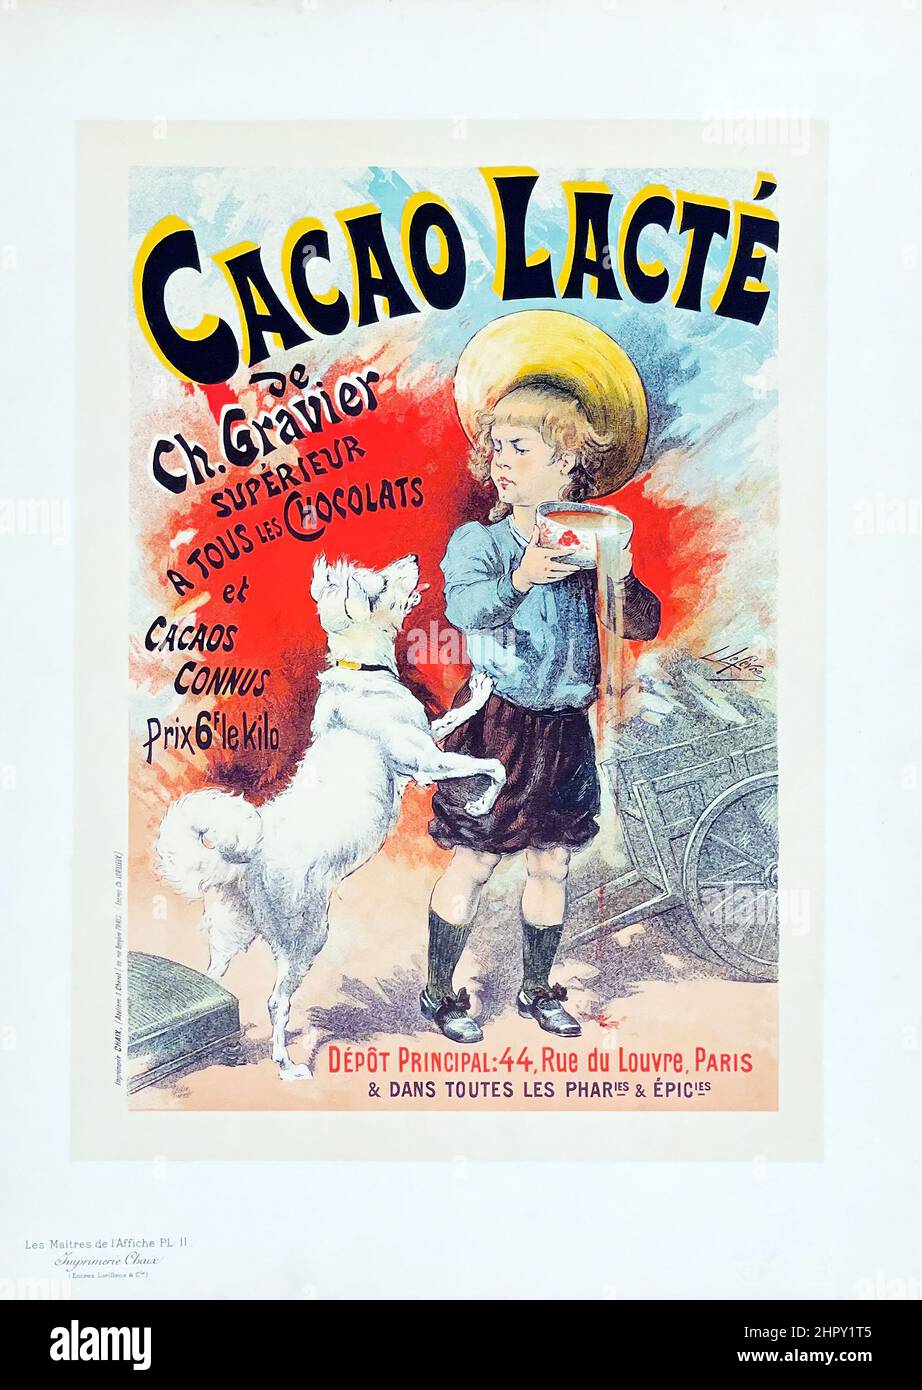 Lucien Lefevre - Cacao lacté (Milky cocoa) - Lithograph (Les Maîtres de l'Affiche), 1895 Stock Photo